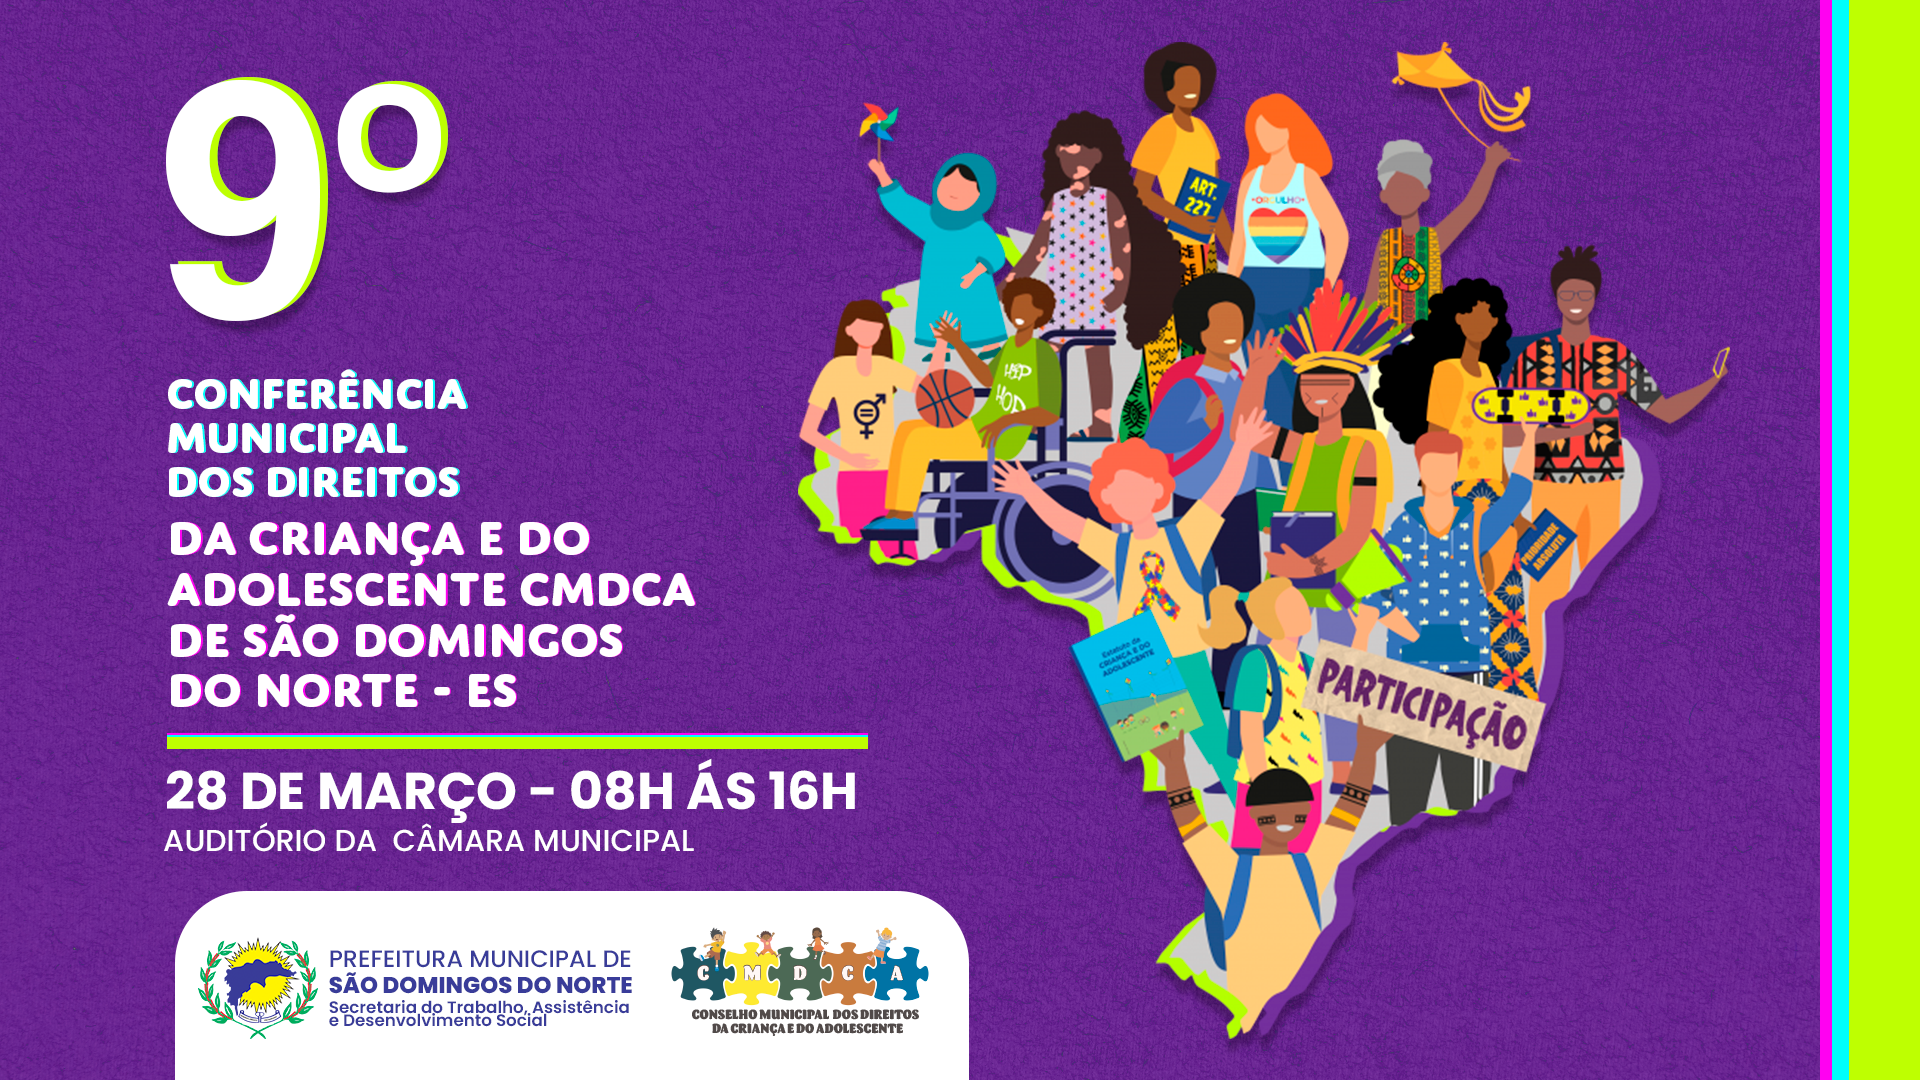 Imagem da notícia: O Conselho Municipal dos Direitos da Criança e do Adolescente juntamente com a Secretaria Municipal do Trabalho, Assistencia e Desenvolvimento Social de São Domingos do Norte - ES